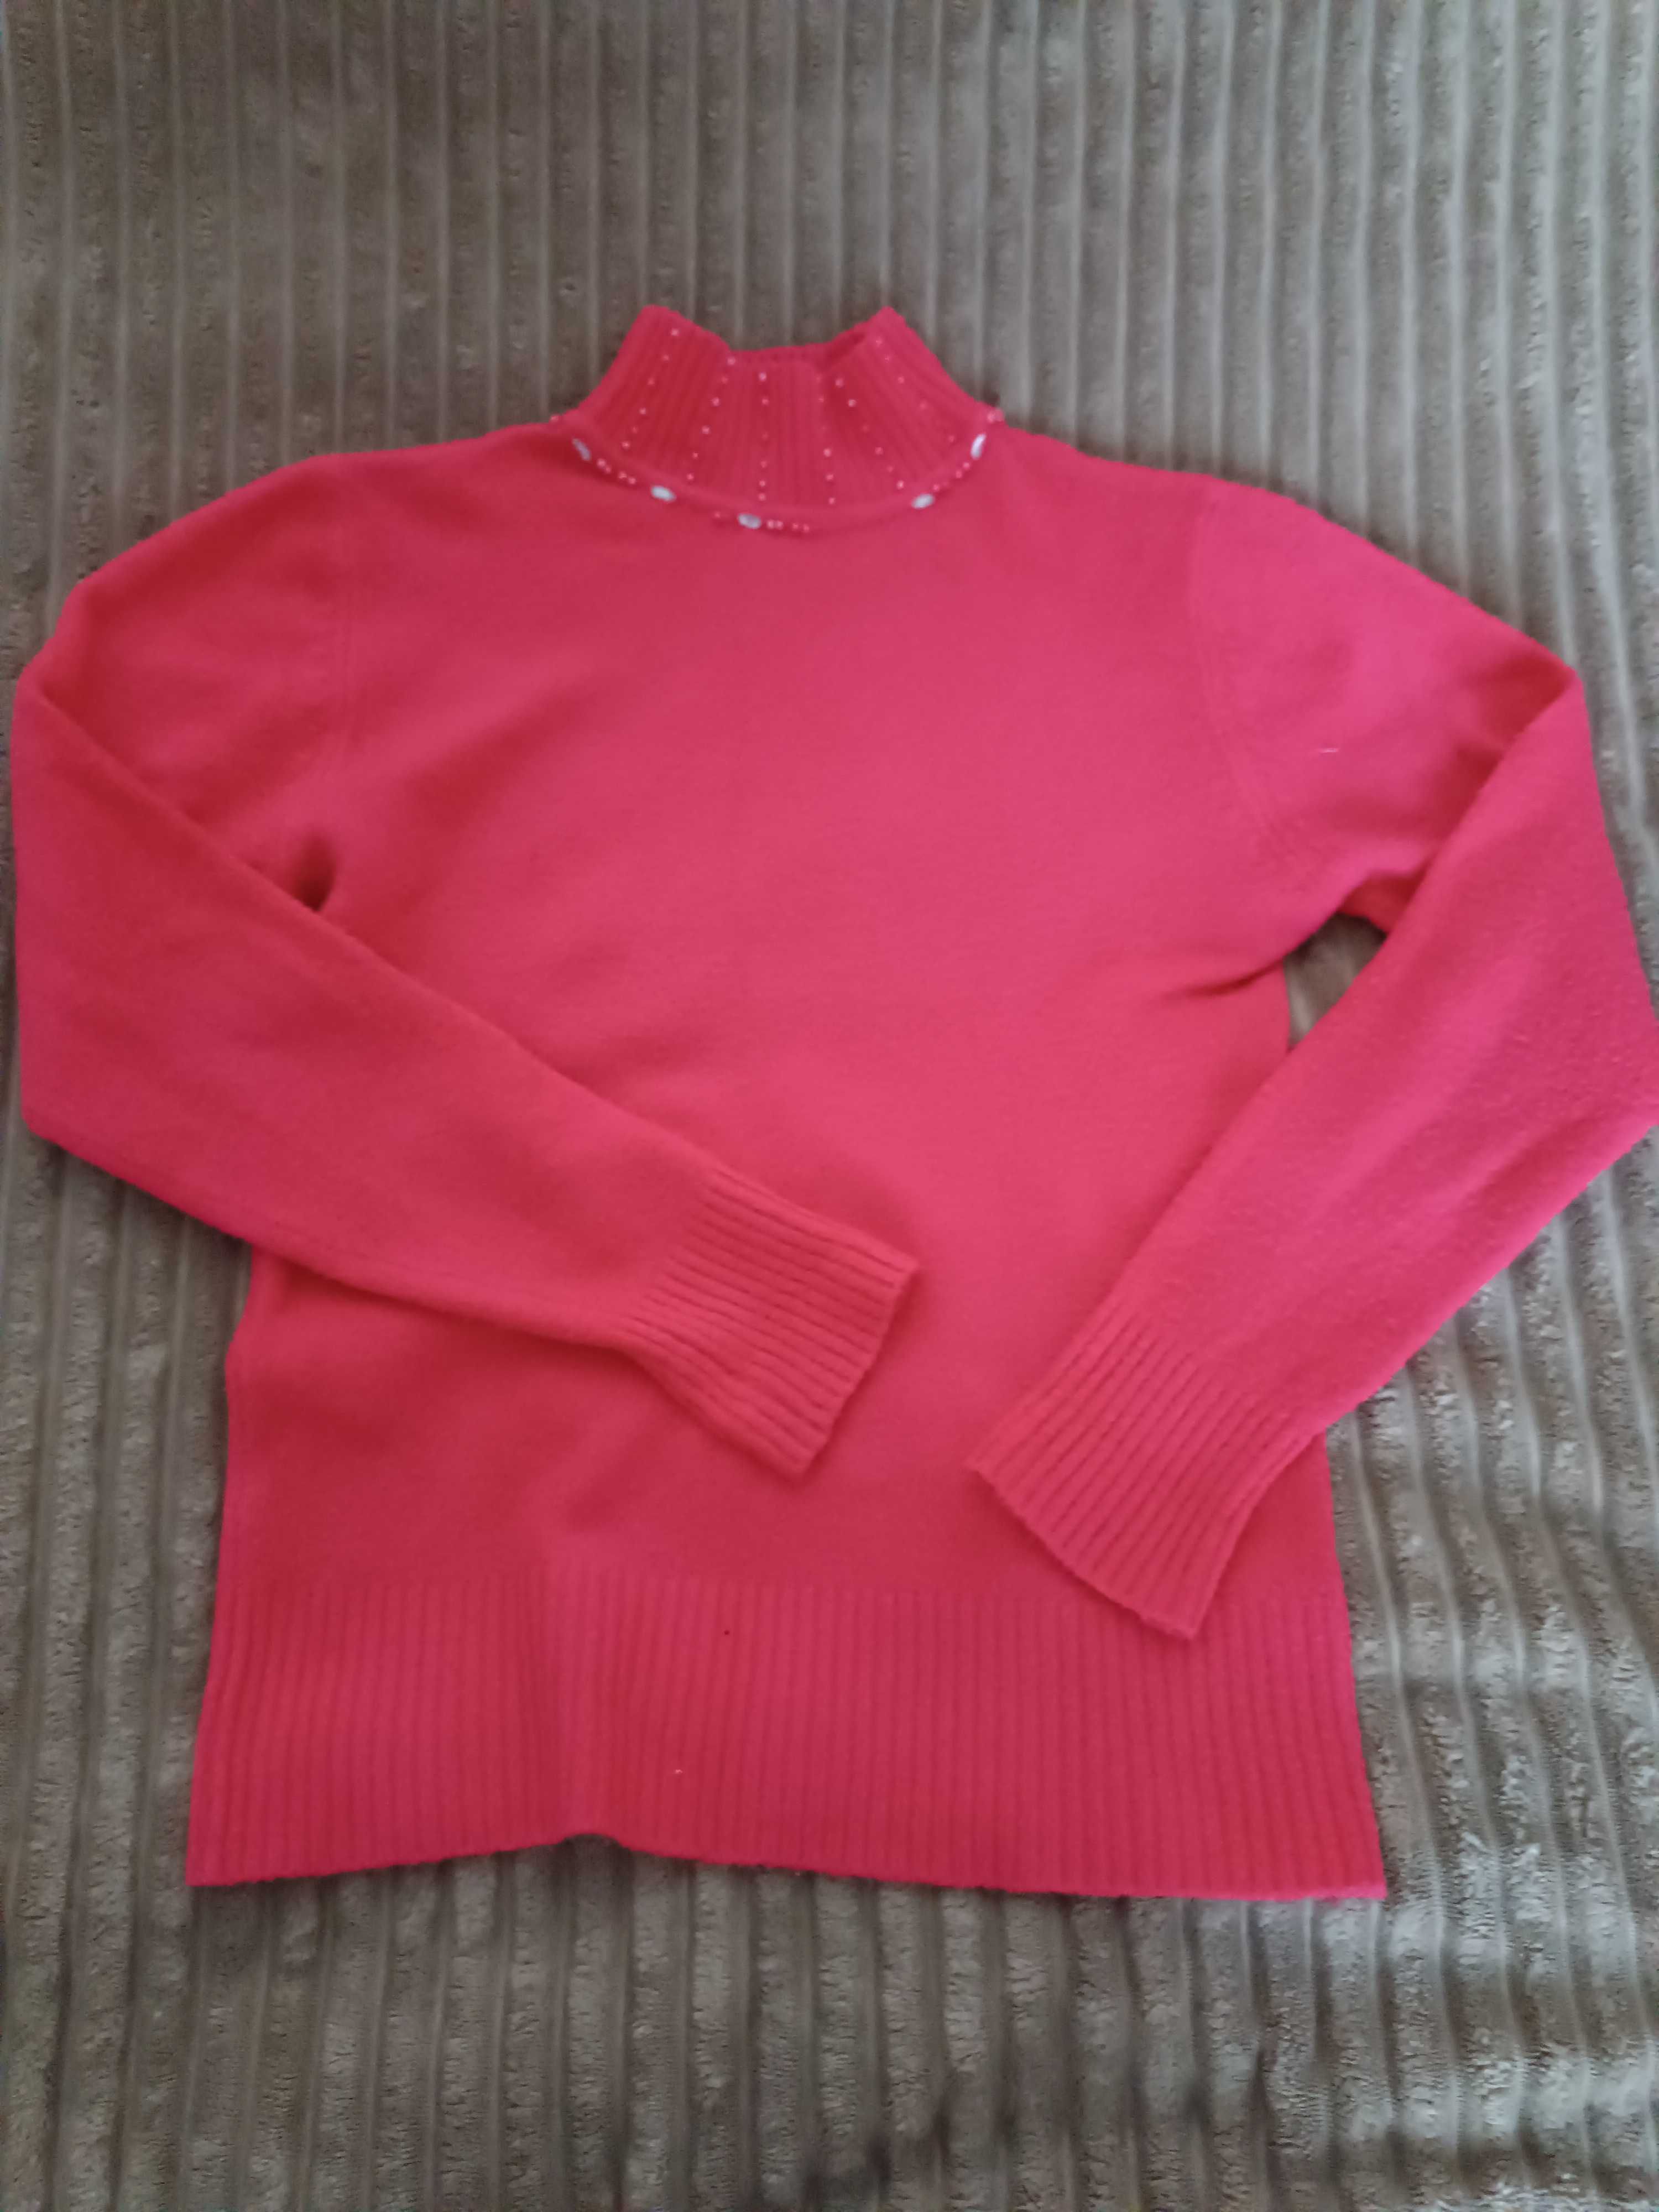 Damski różowy sweterek/półgolf